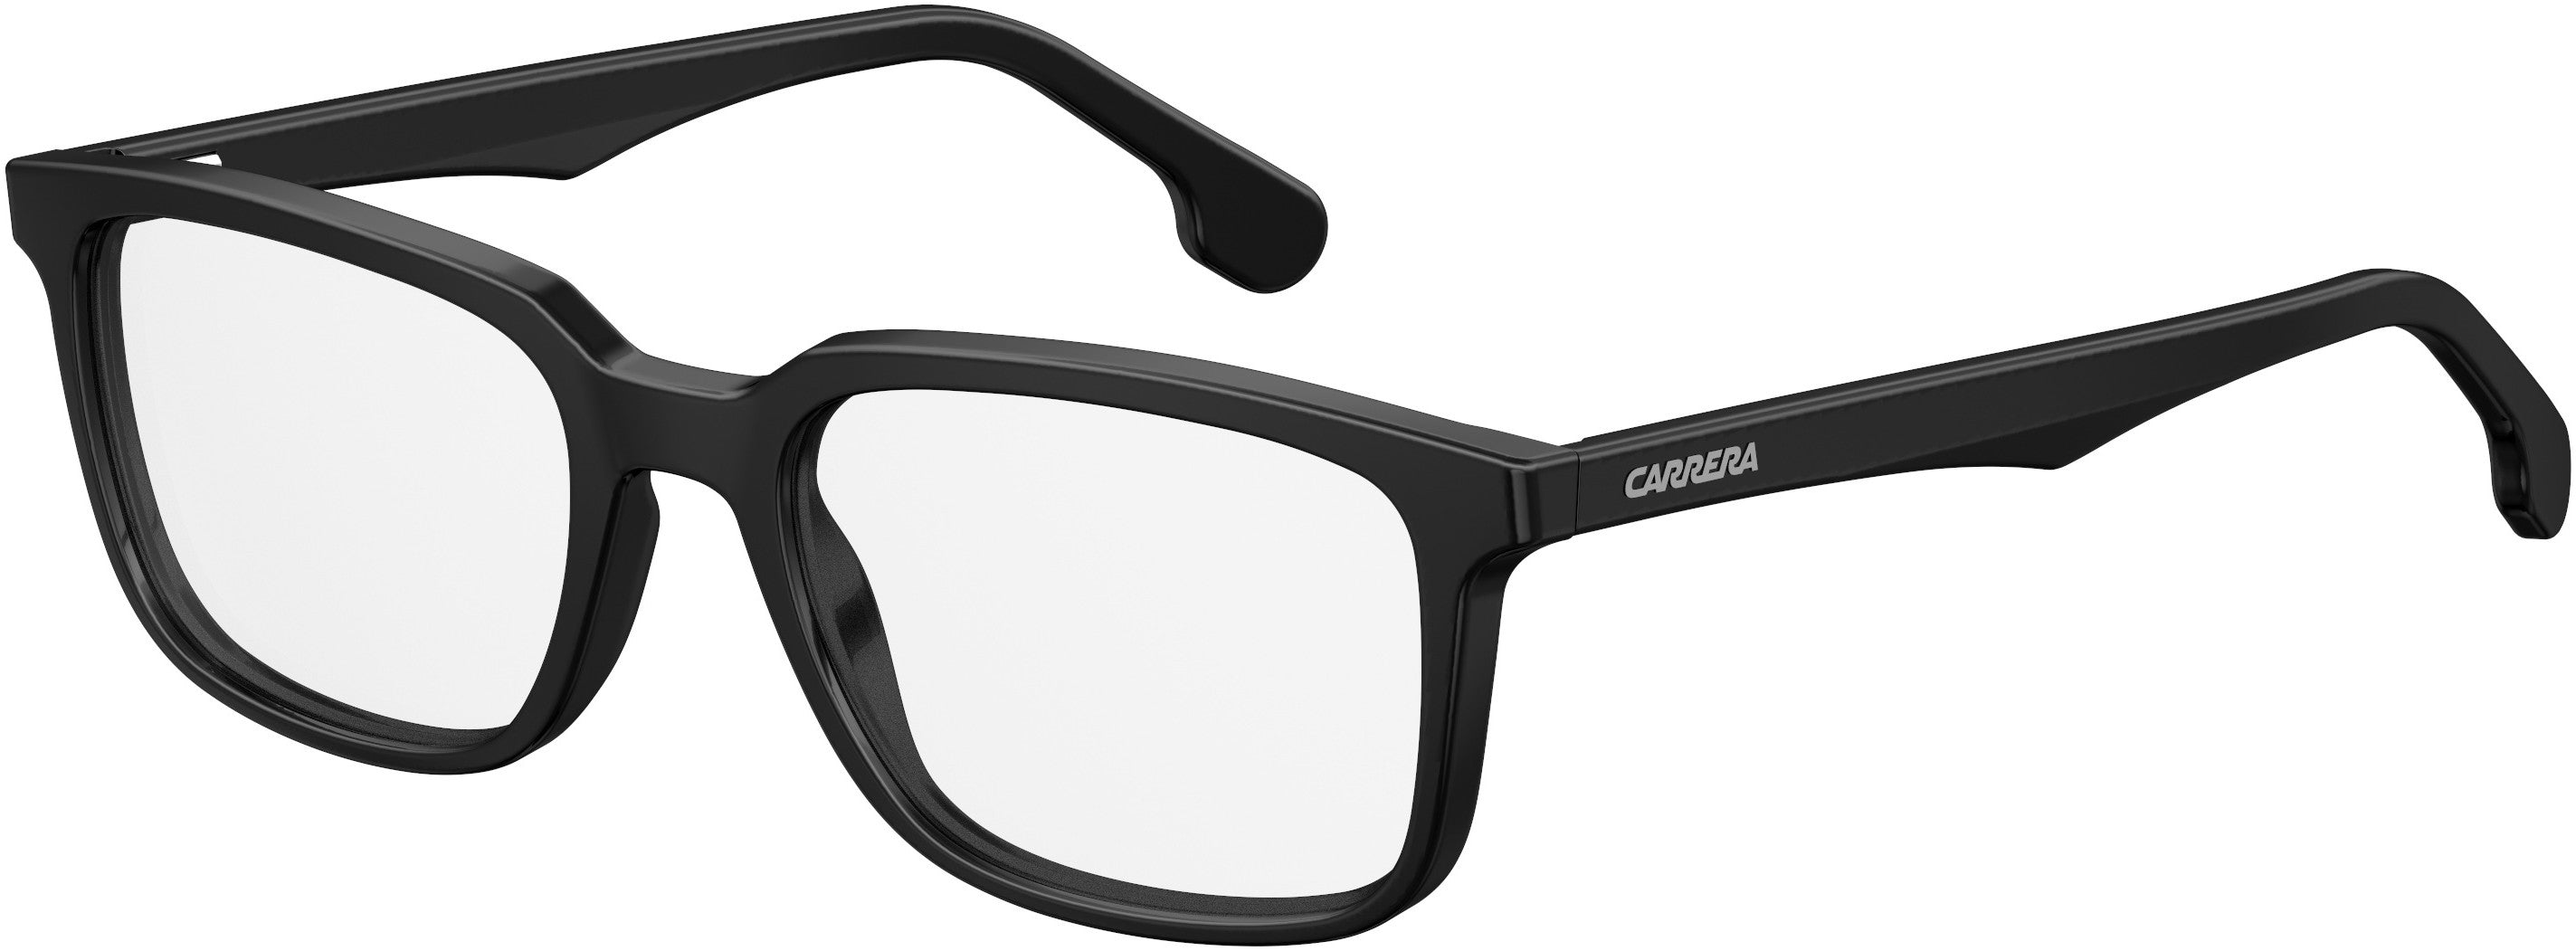  Carrera 5546/V Rectangular Eyeglasses 0807-0807  Black (00 Demo Lens)